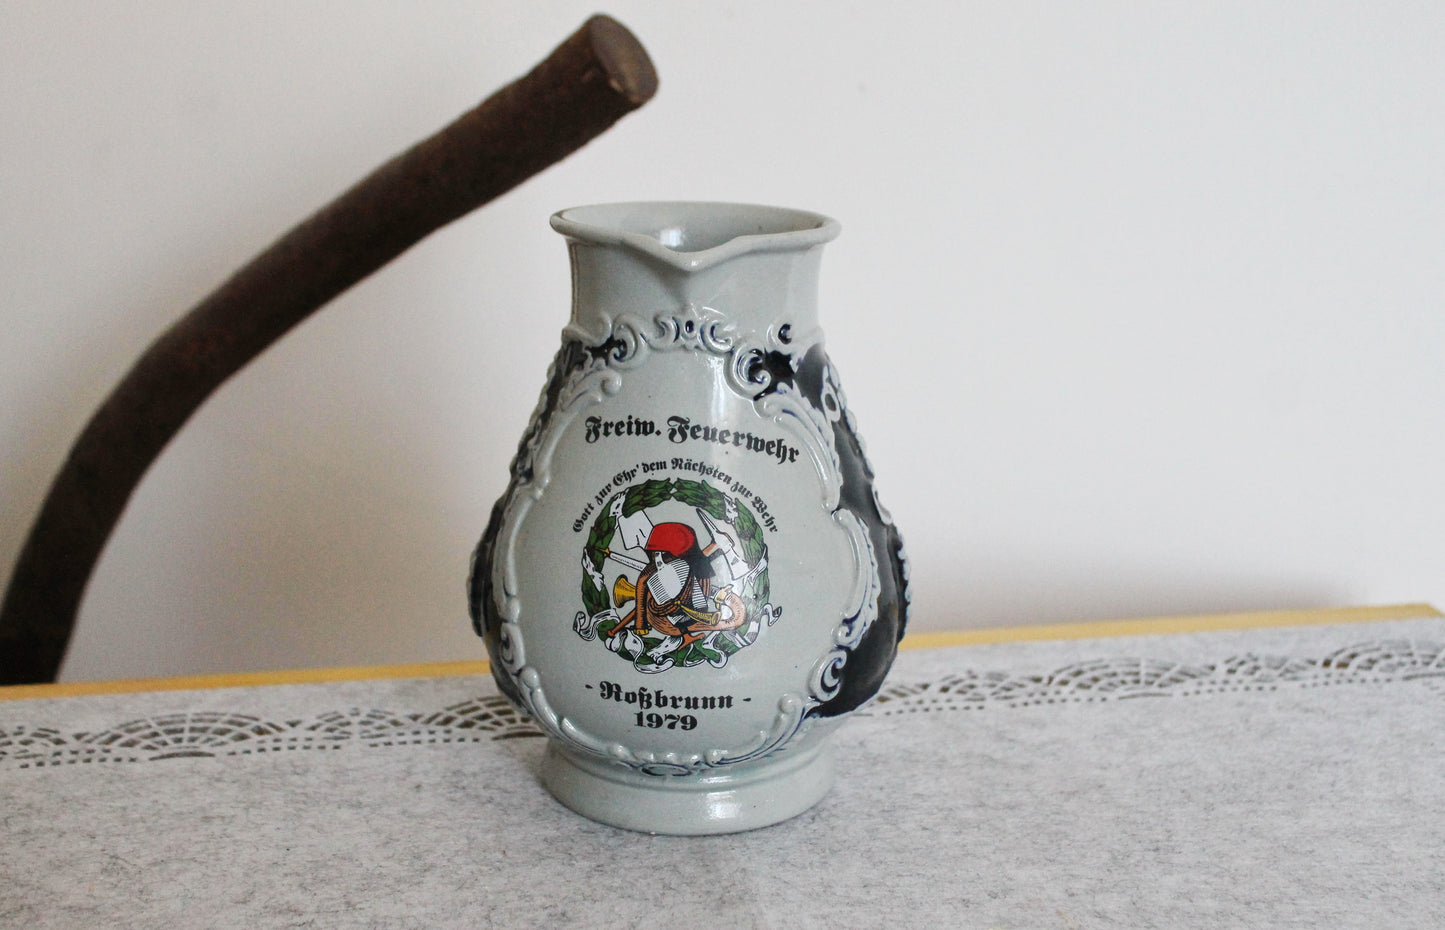 Clay jug - Vintage big Ceramic Pottery Clay Pot - 7.5 inches - Germany vintage jug - 1970s